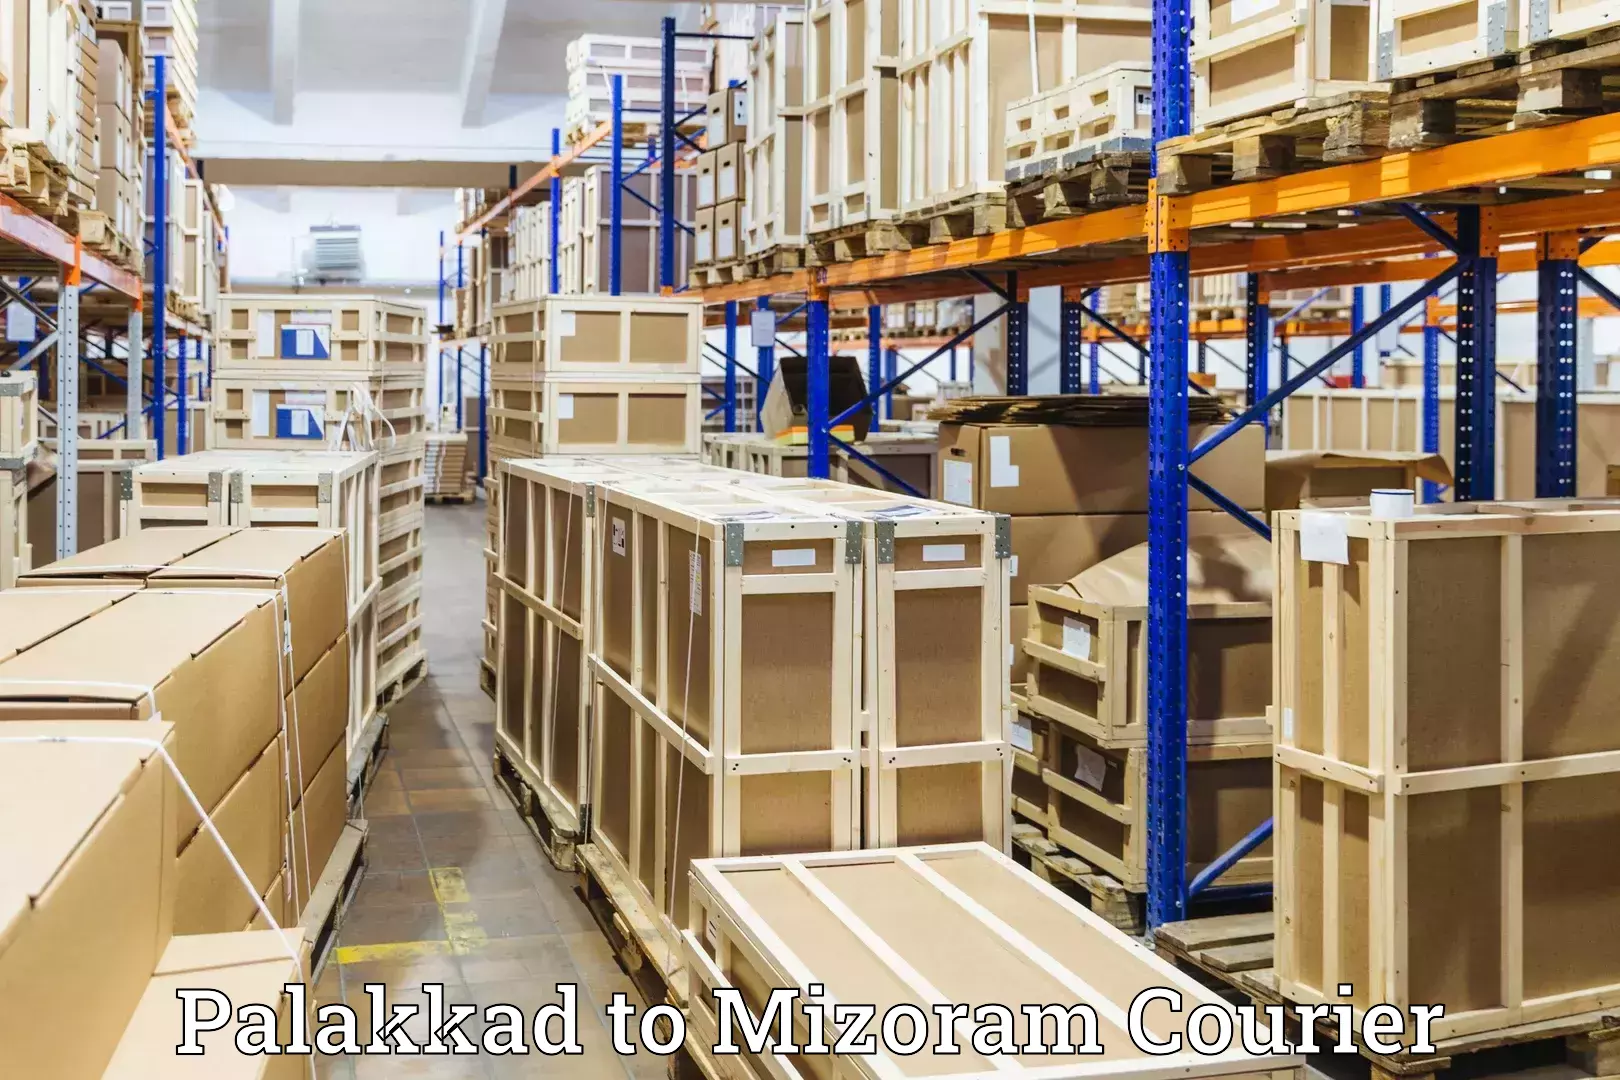 Luggage transport consultancy Palakkad to Mizoram